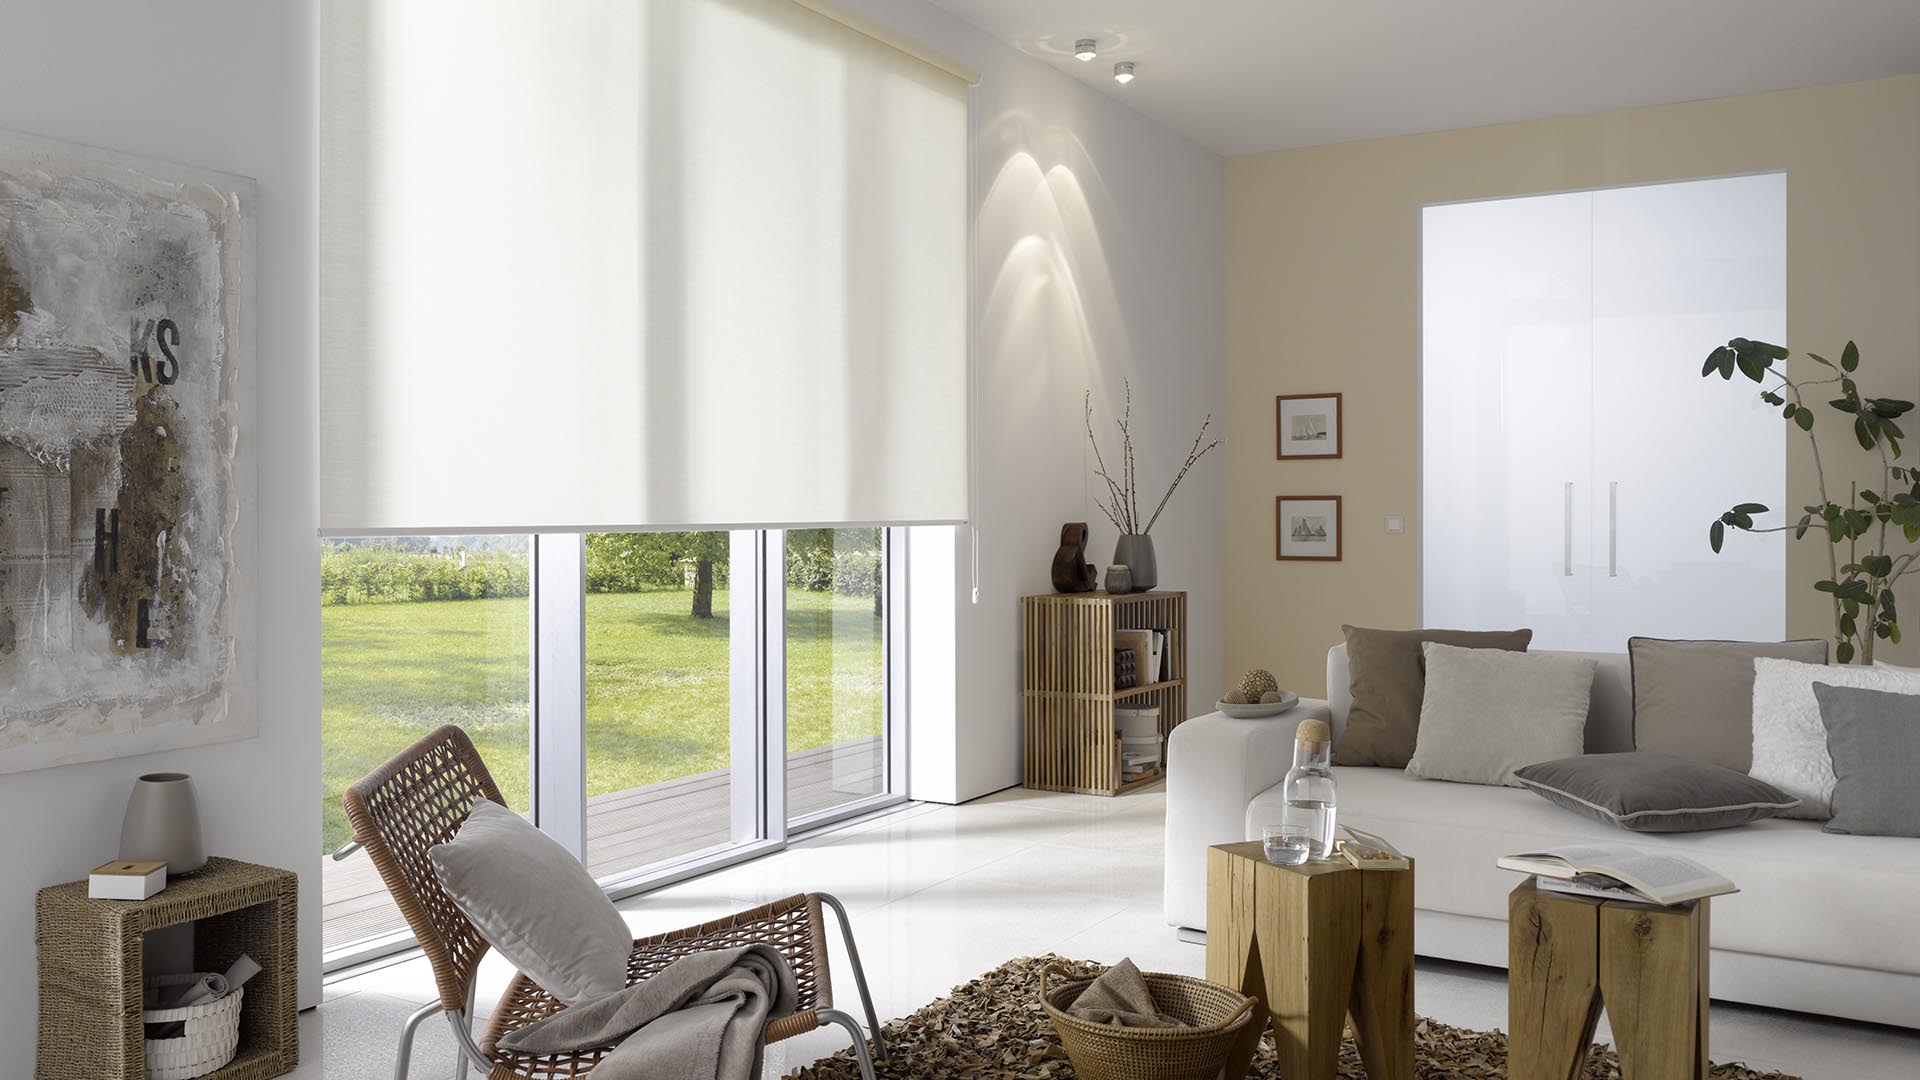 Design-Rollo an einem Wohnzimmerfenster in grau